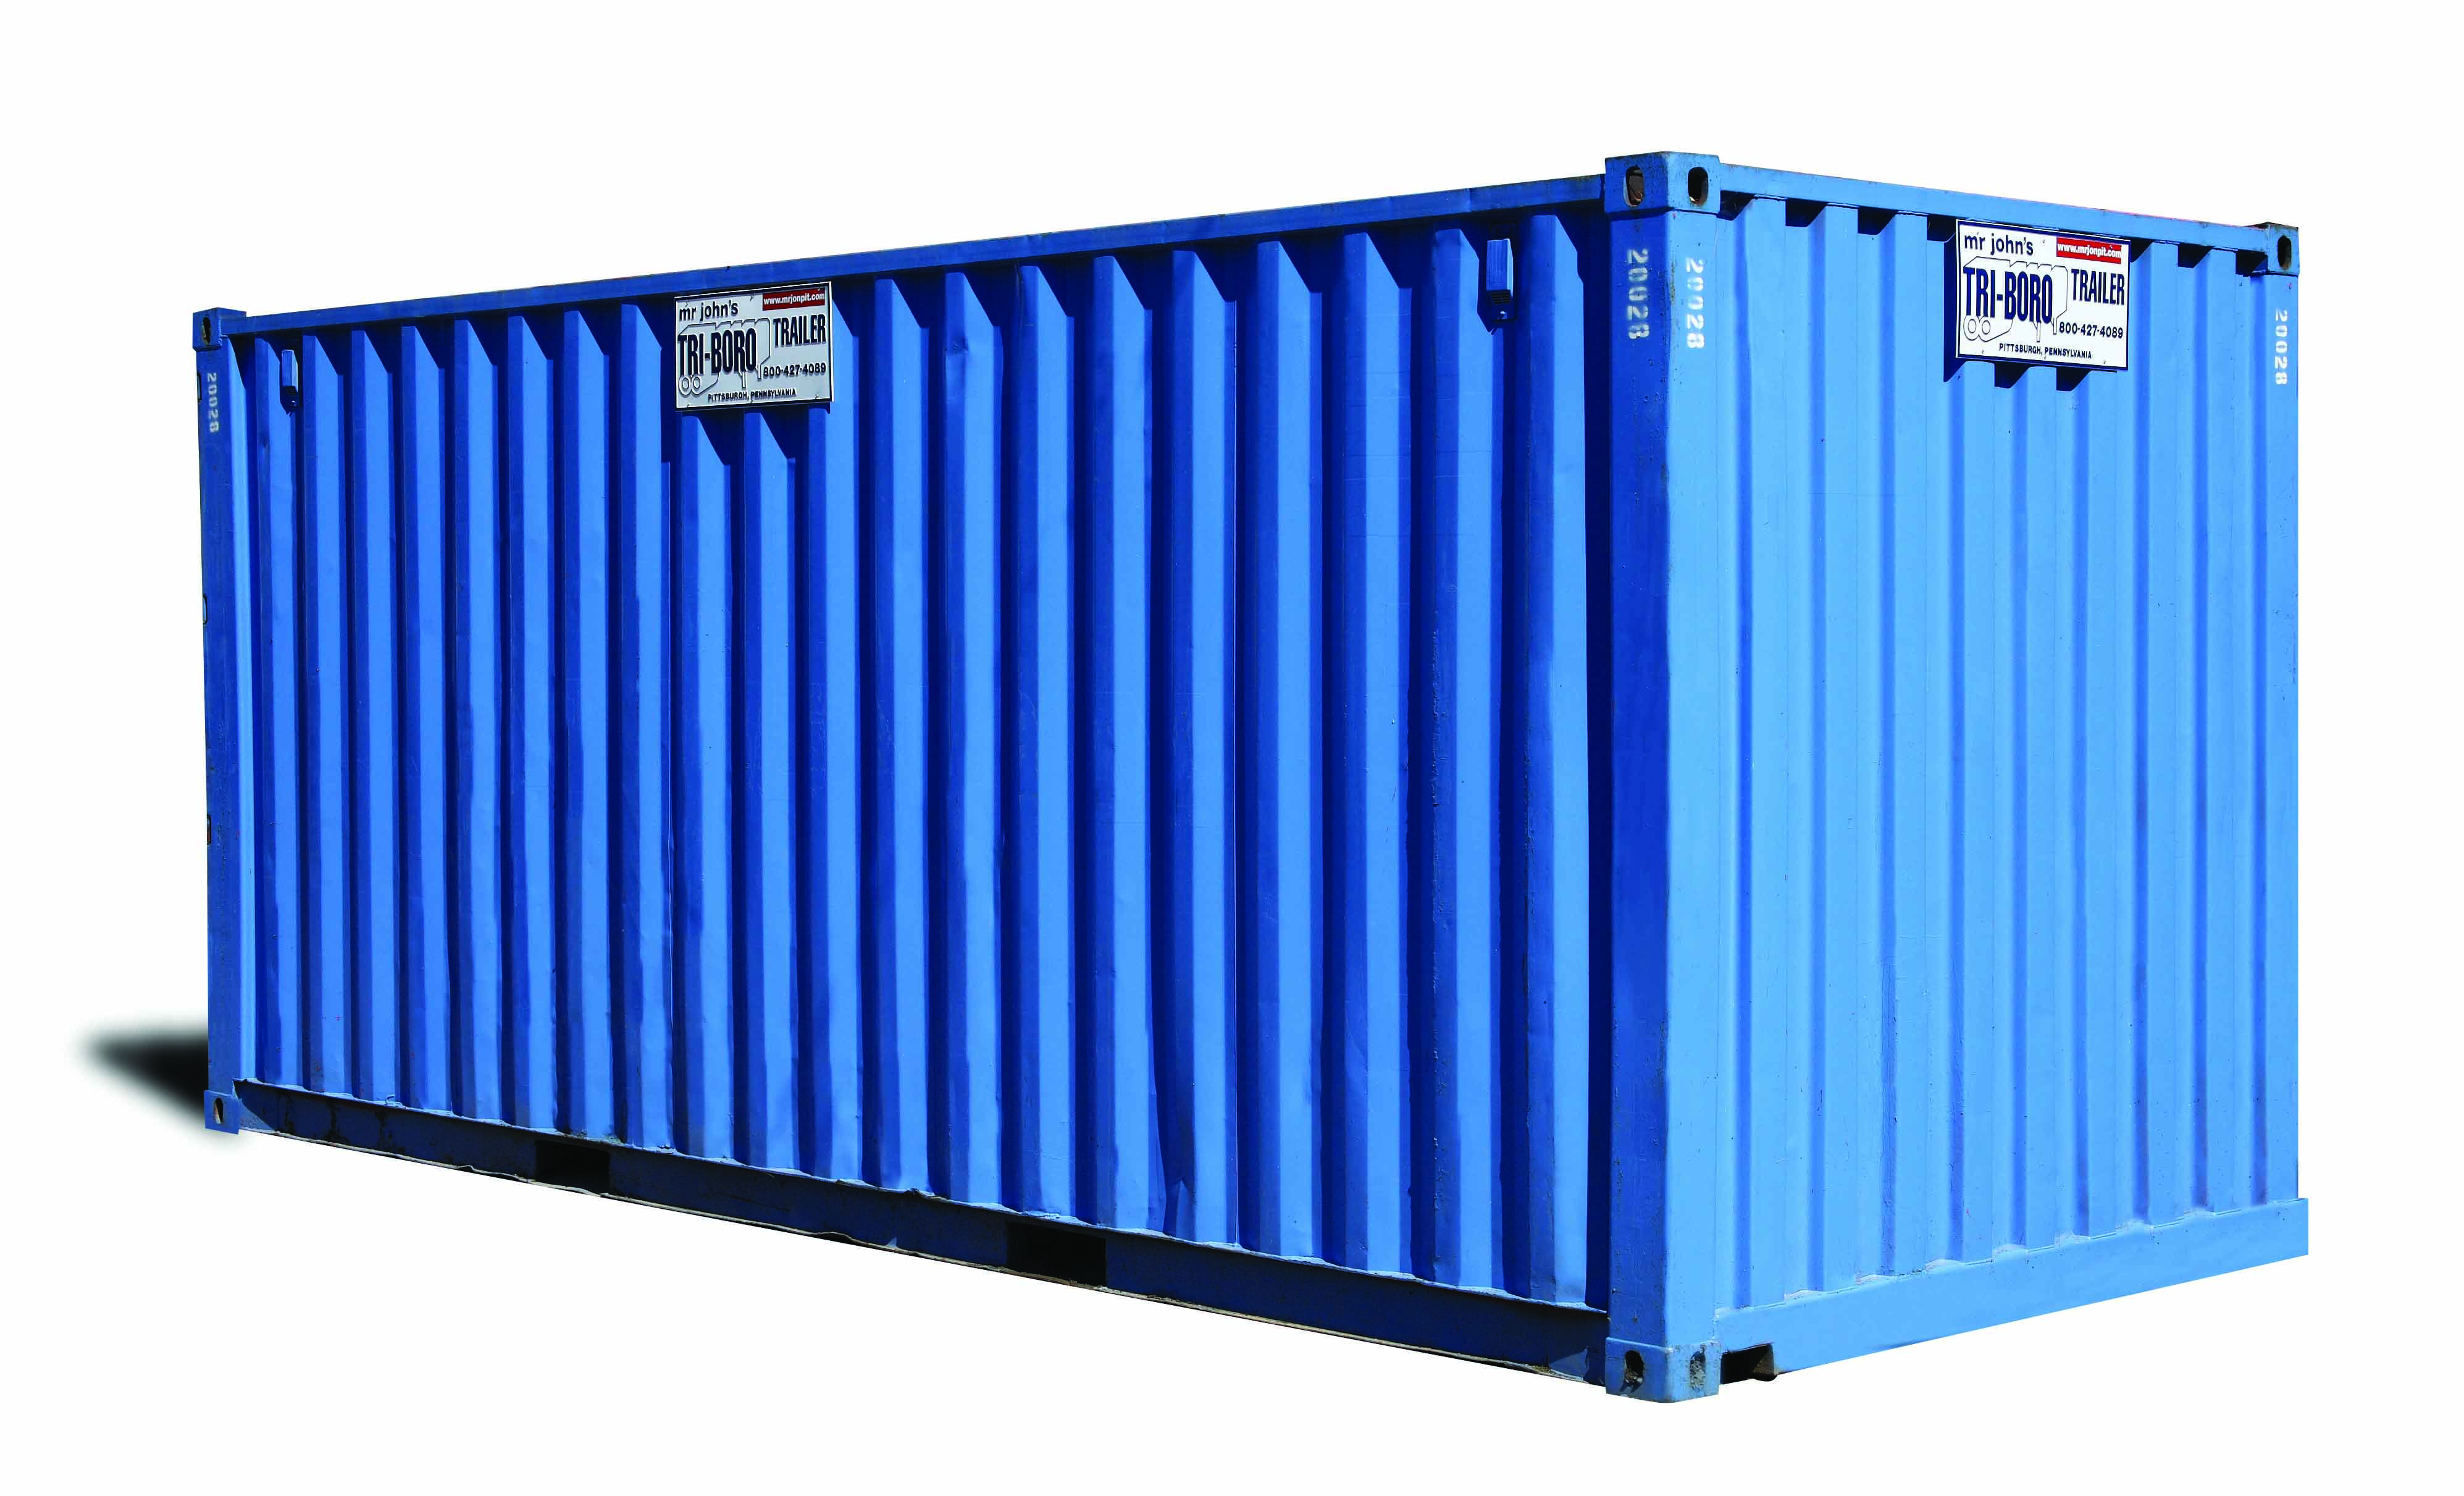 20' Storage Container - Mr. John Portable Toilet Rental